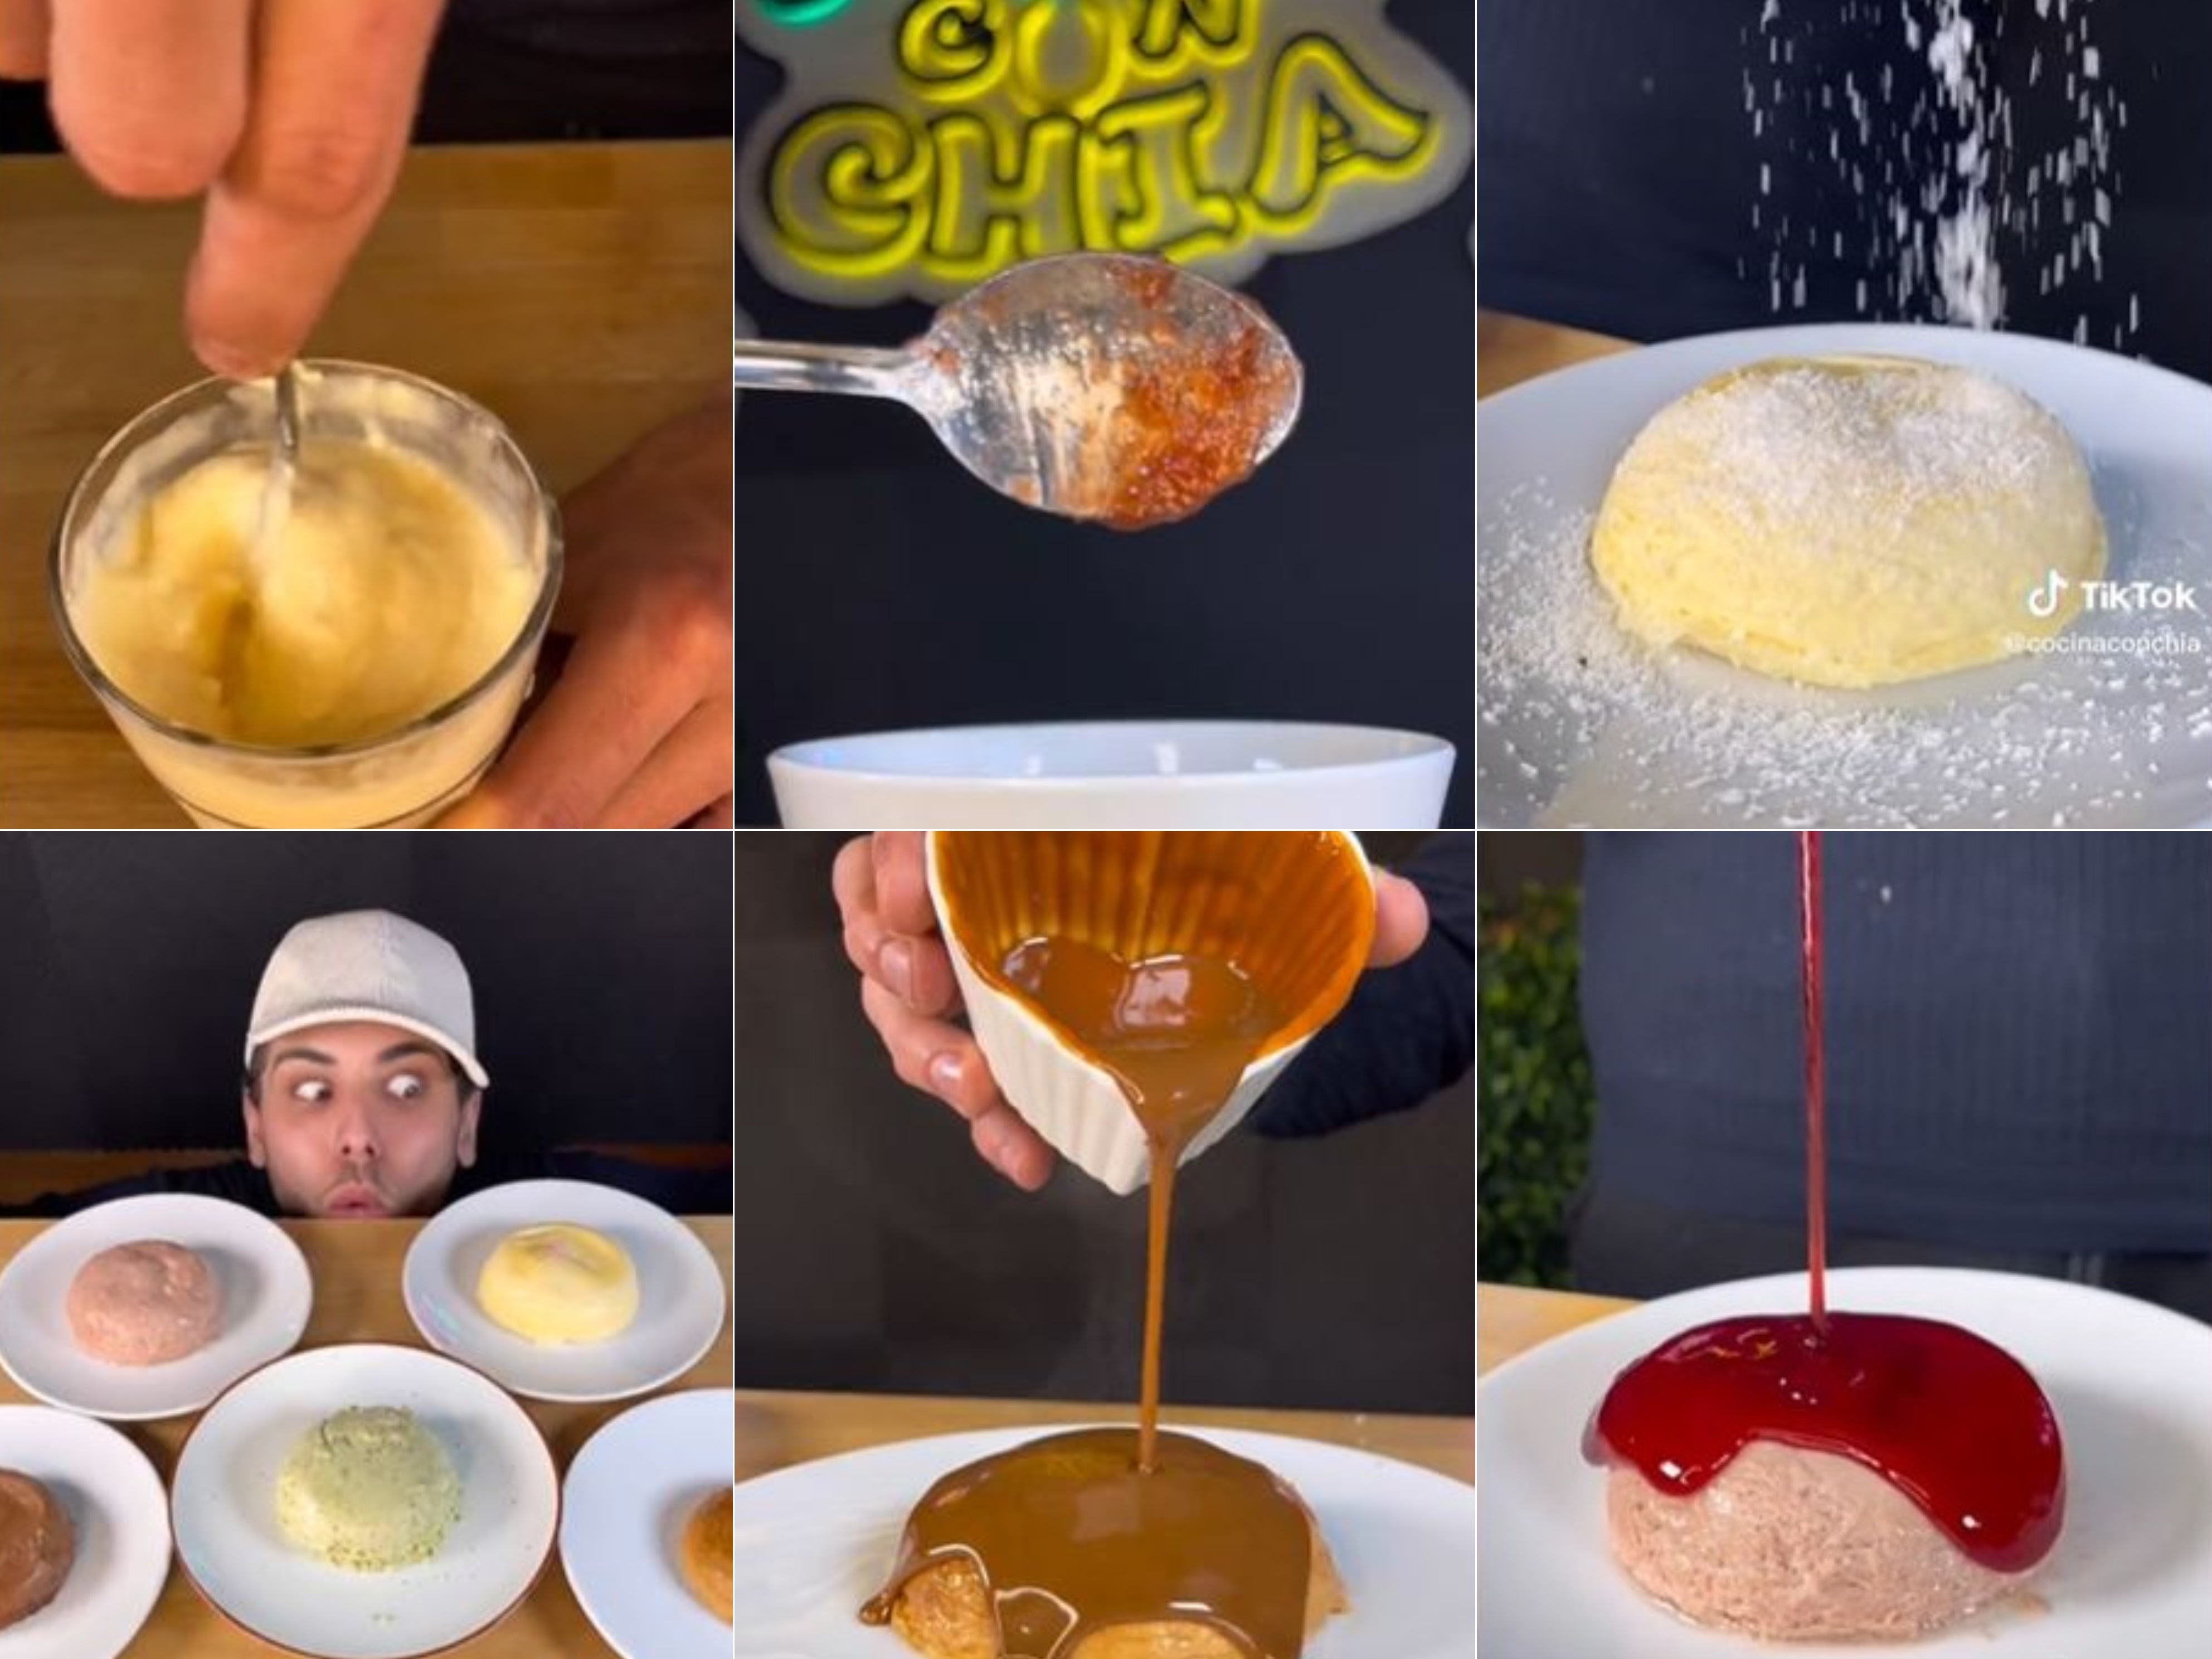 Cómo hacer un 'cheesecake' en el microondas en 30 segundos, Ocio y cultura